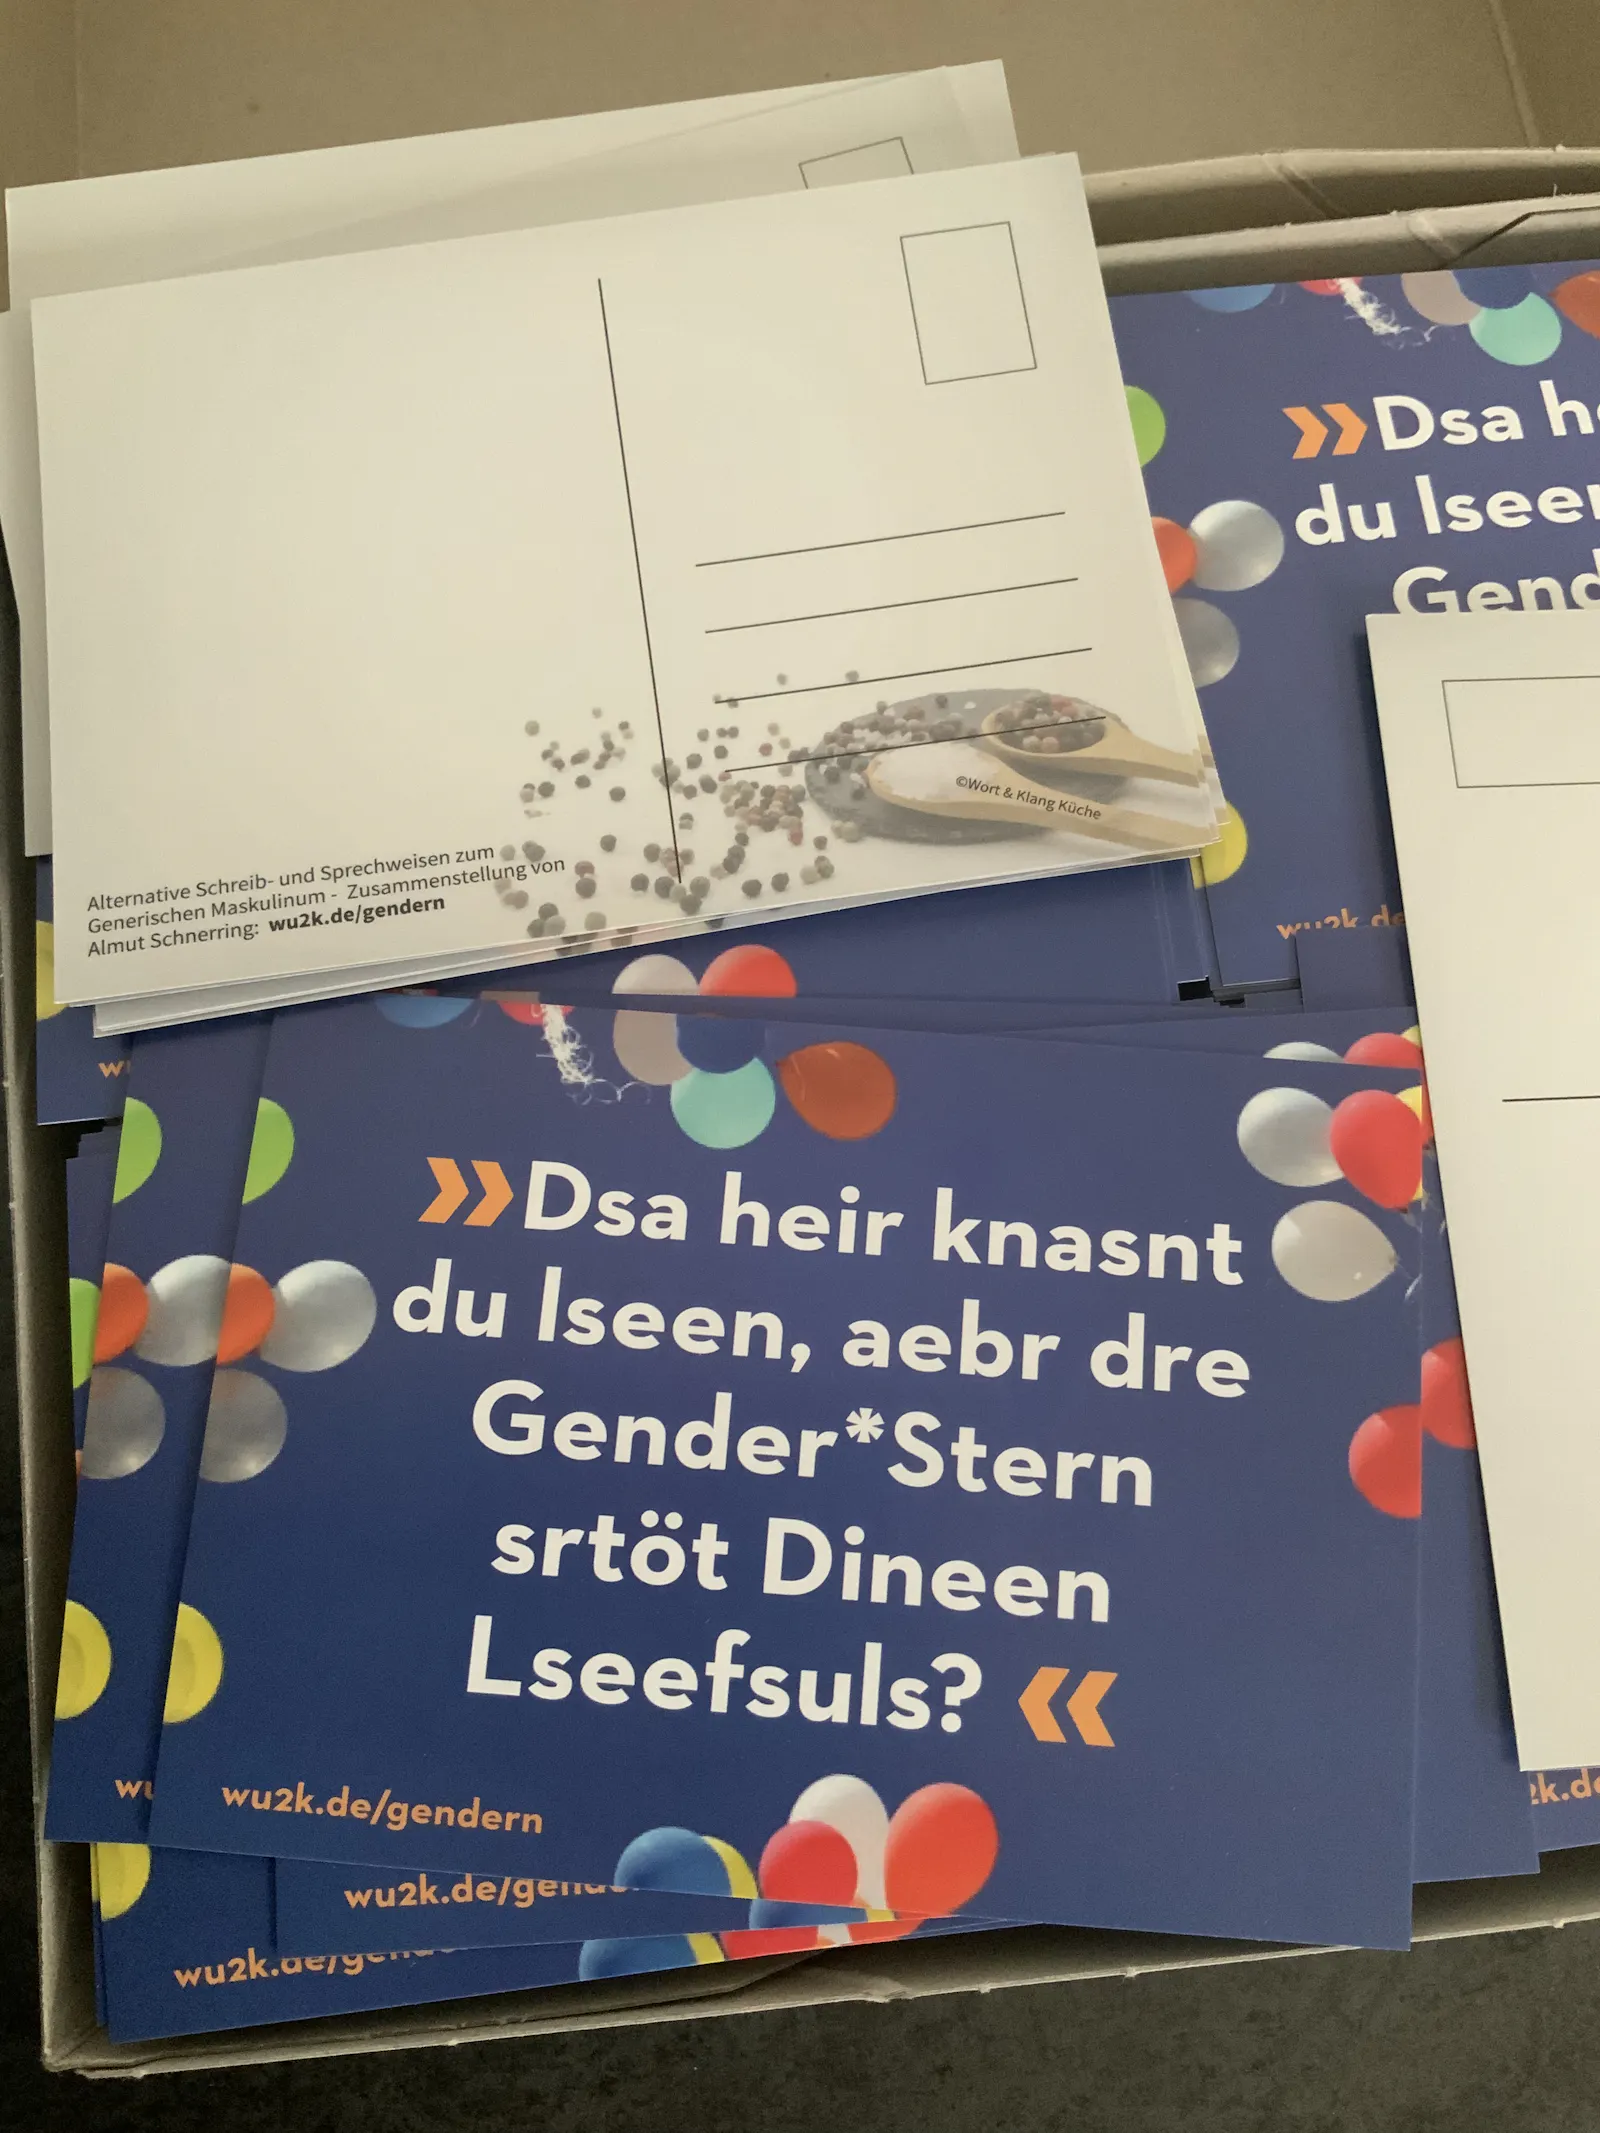 foto von einem Postkartenstapel, Vorderseite der Postkarte mit Text "Dsa heir knasnt du lseen?"